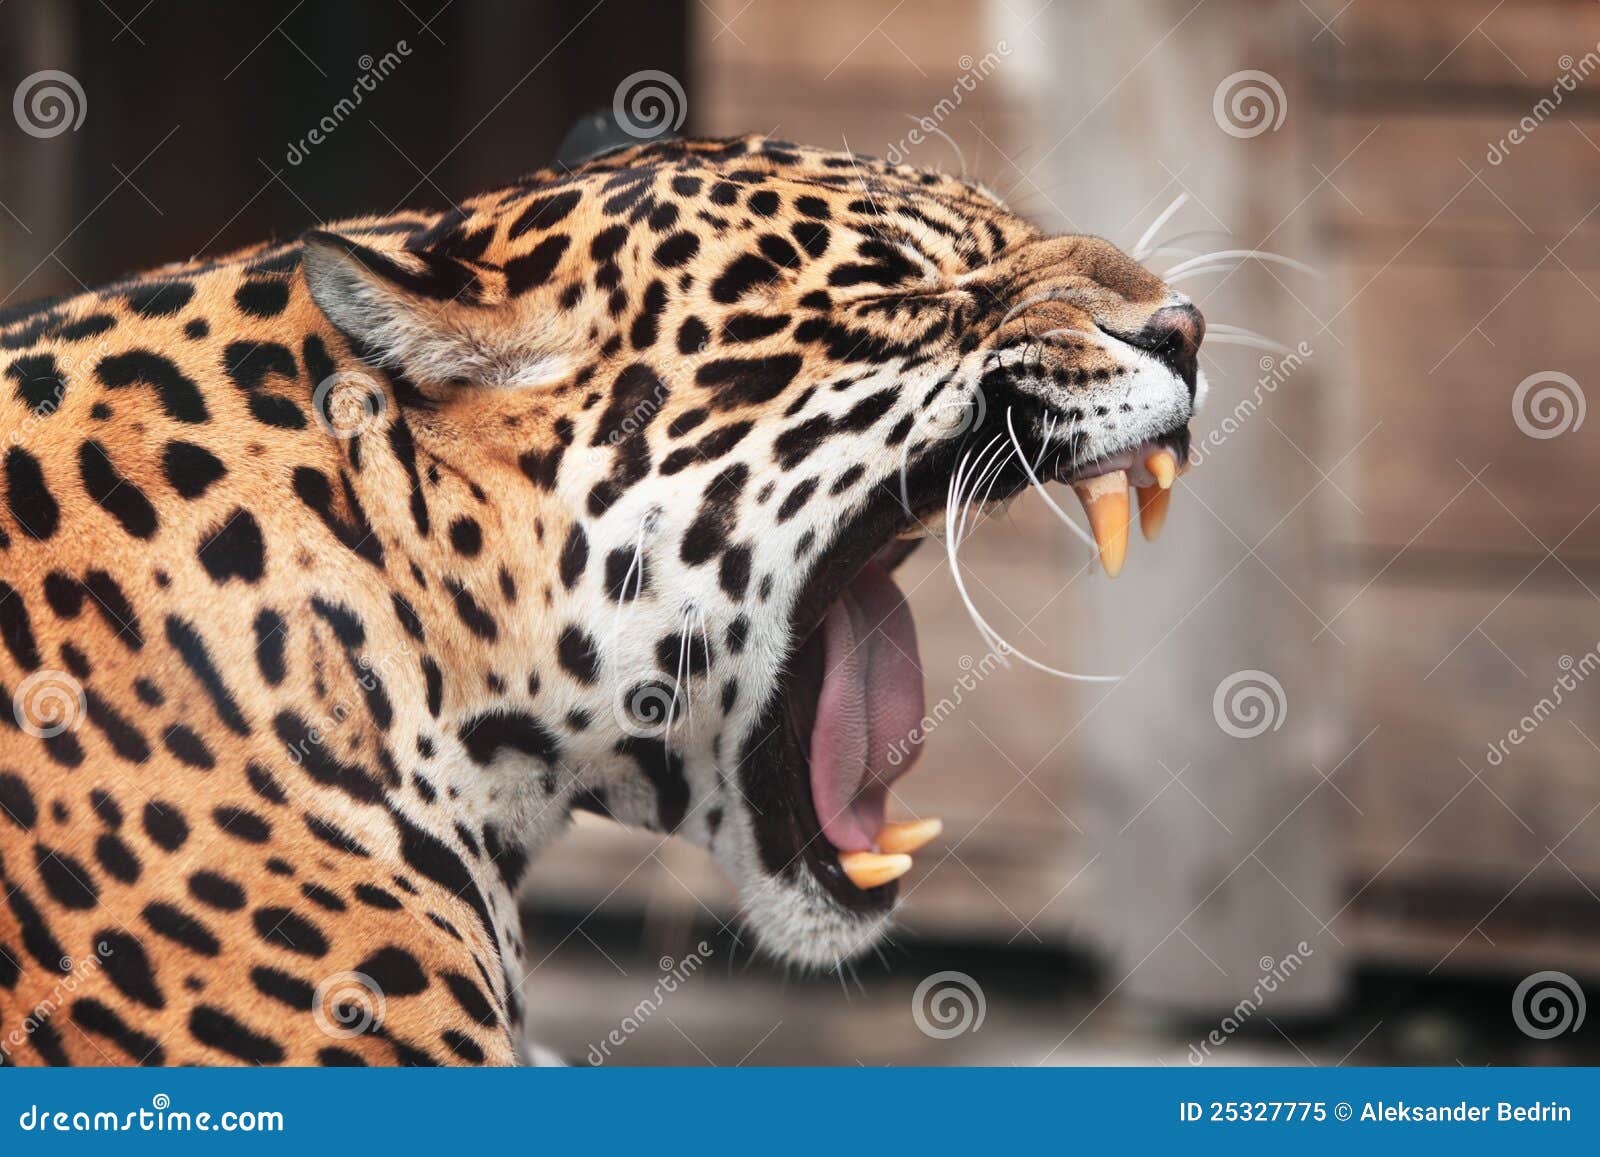 roaring jaguar. wildlife